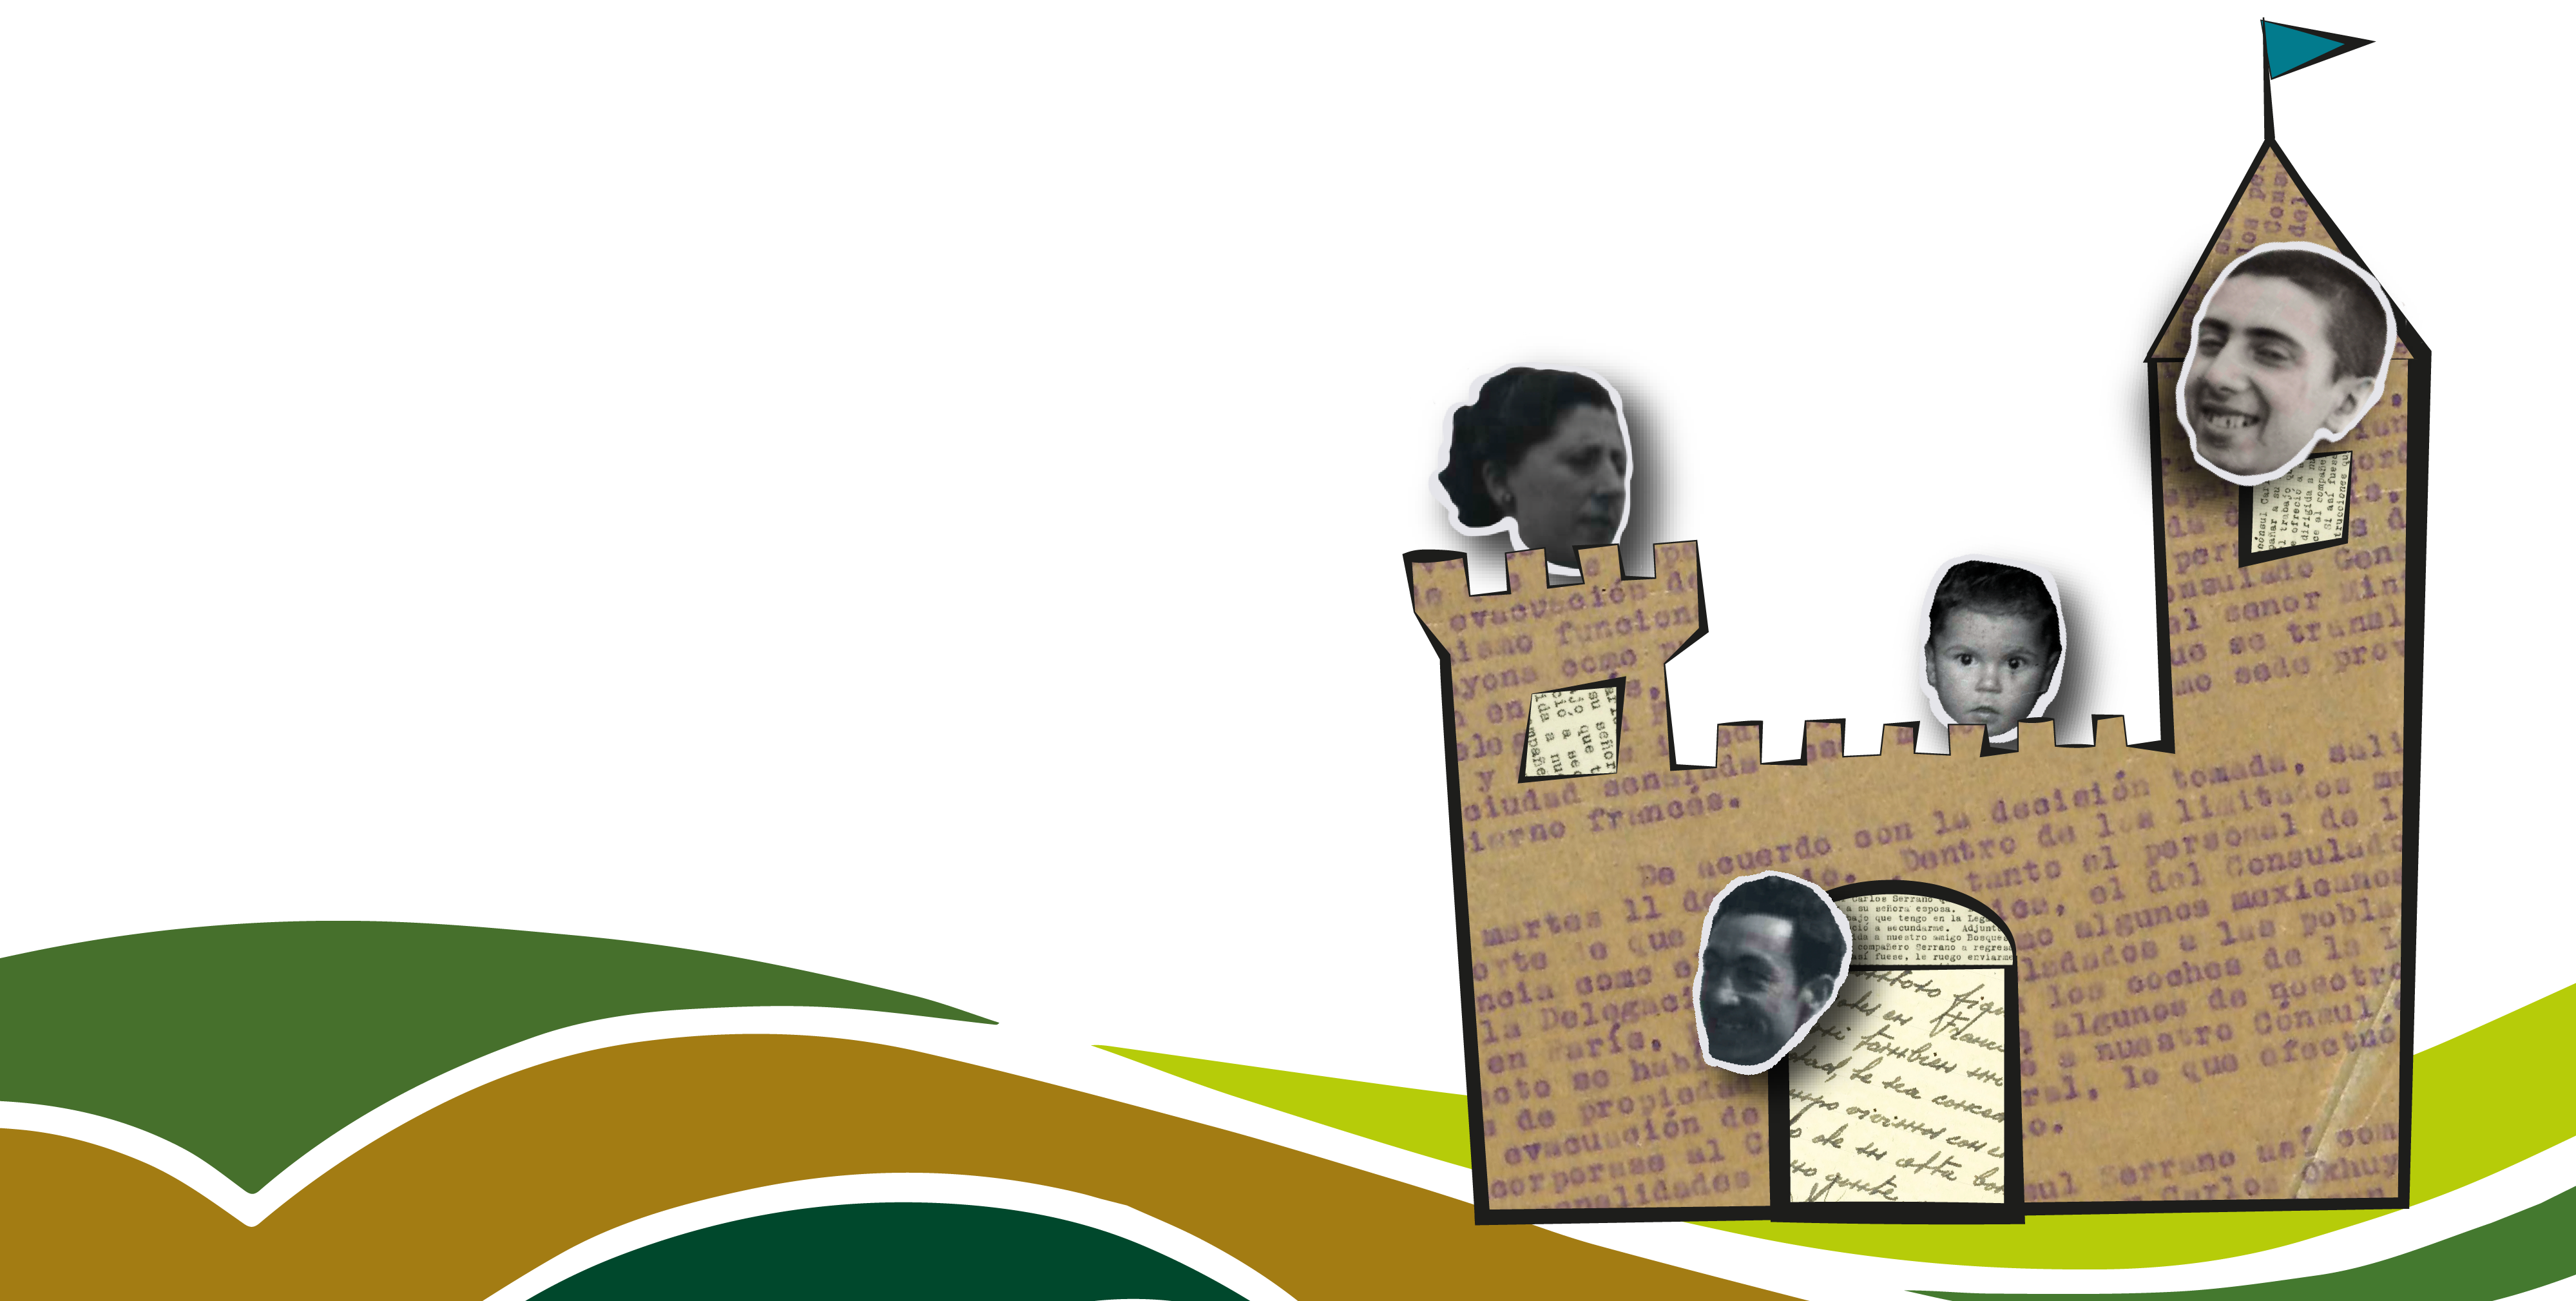 imagen de un castillo de papel con los refiguados